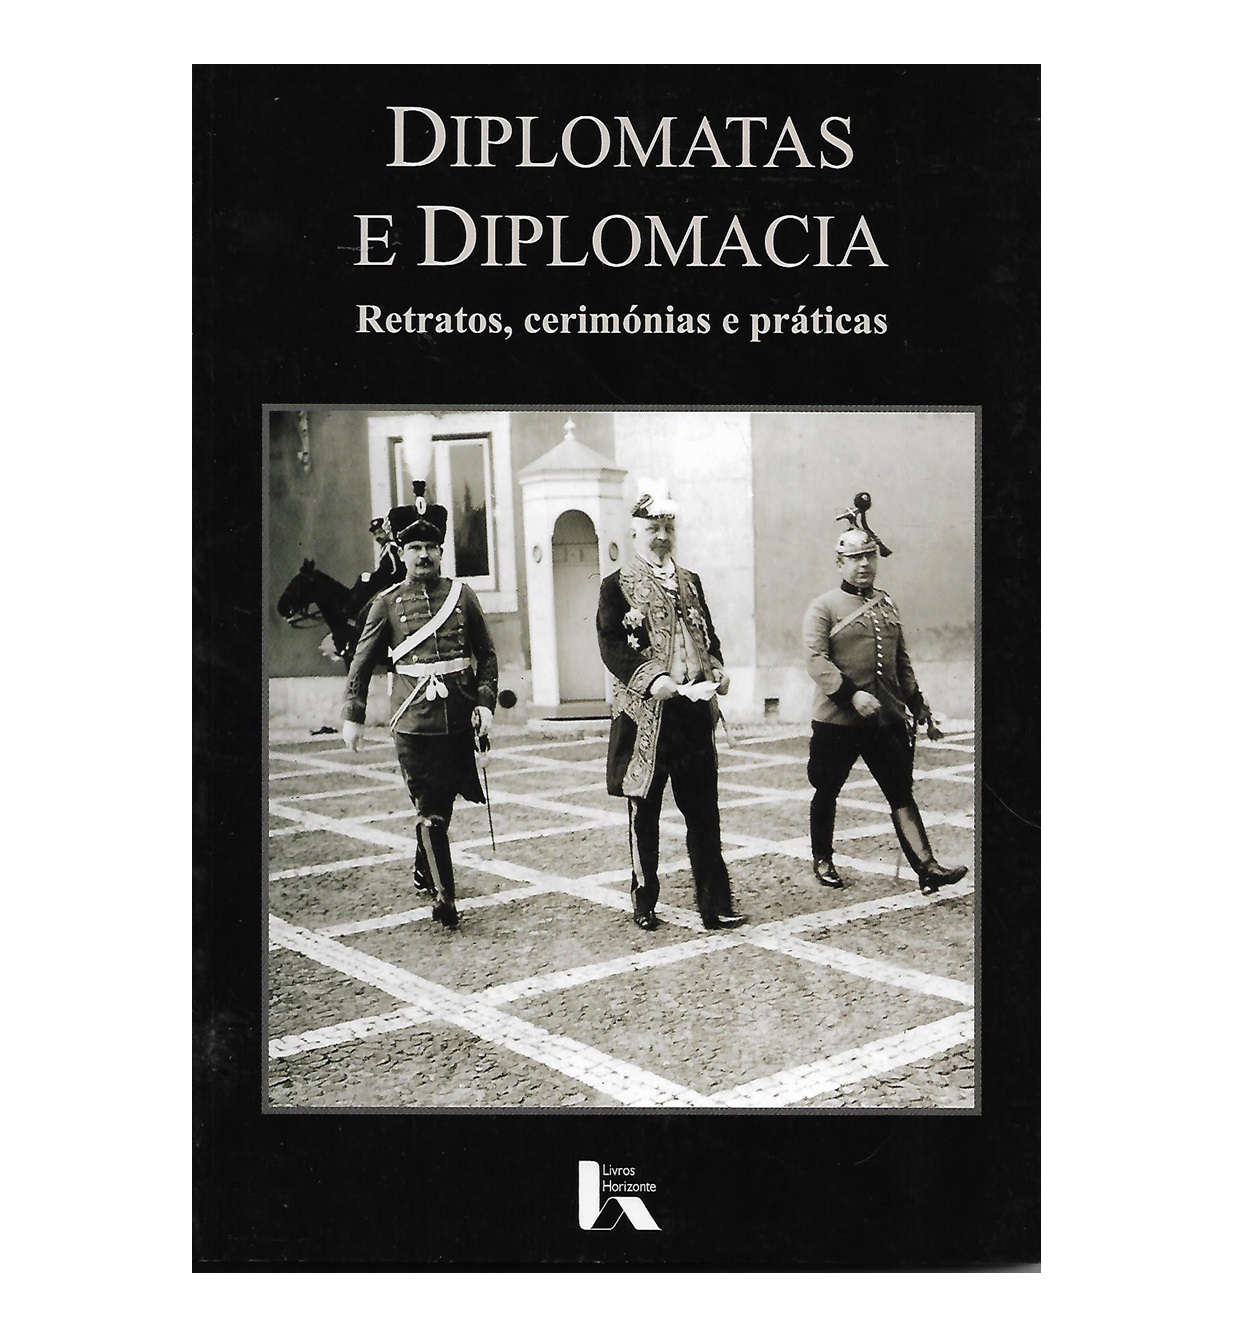 Diplomatas e Diplomacia. Retratos, cerimónias e práticas